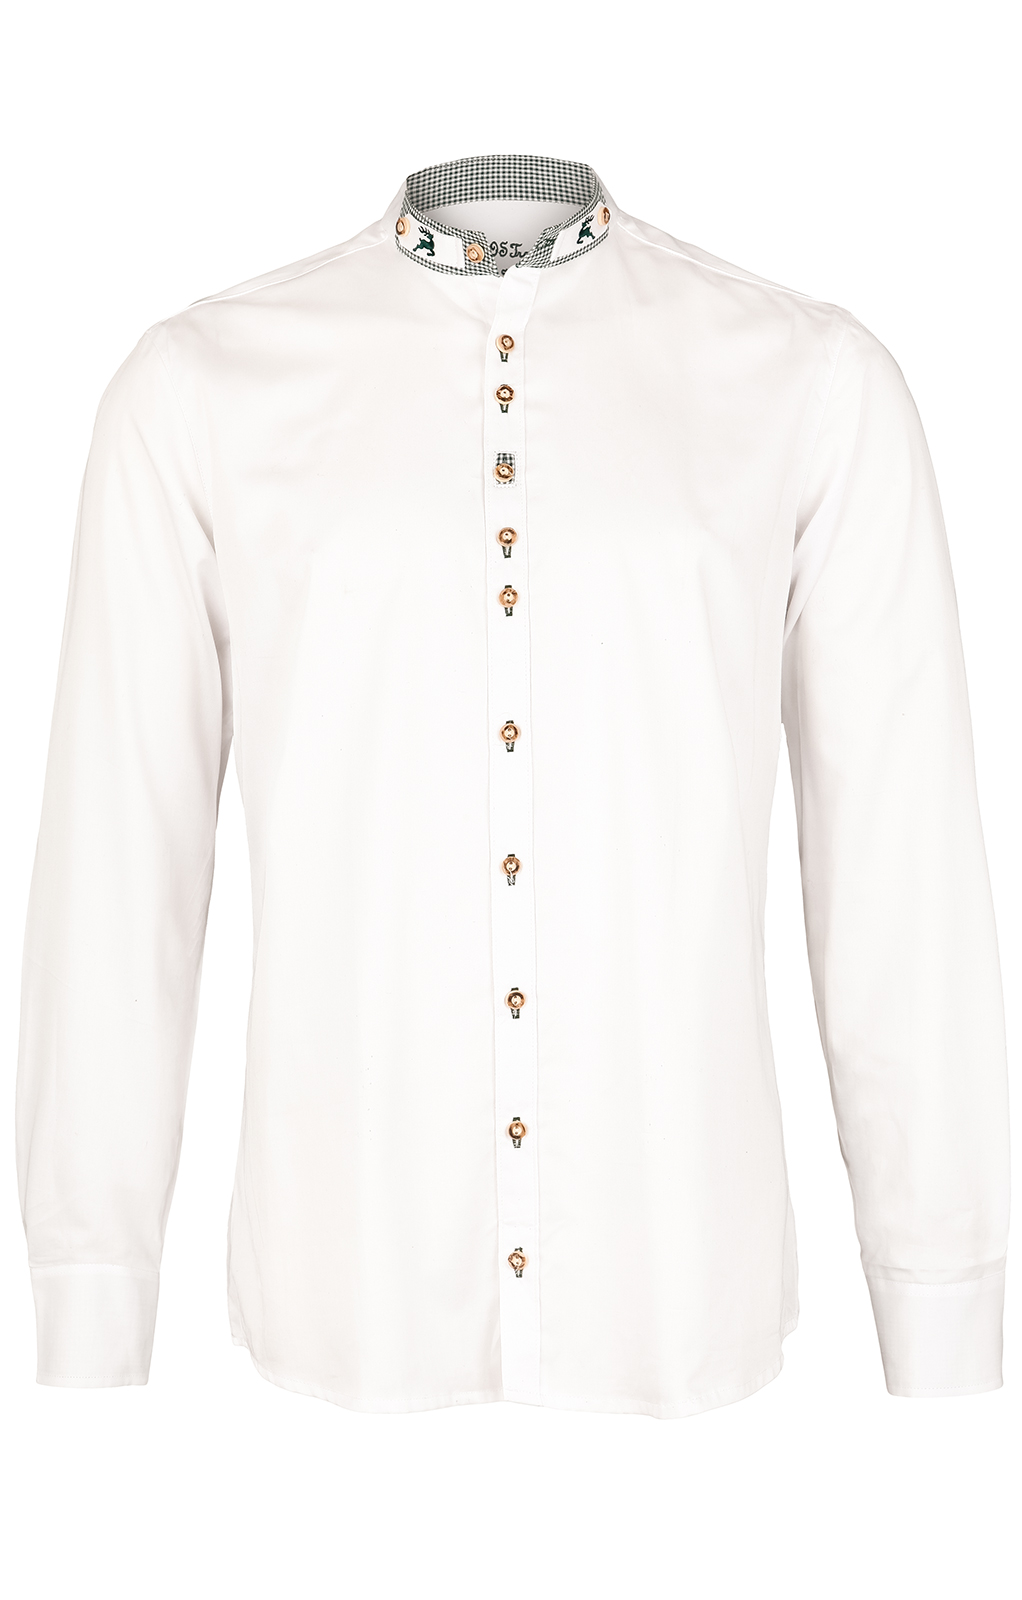 weitere Bilder von German traditional shirt Slim fit PERINO white